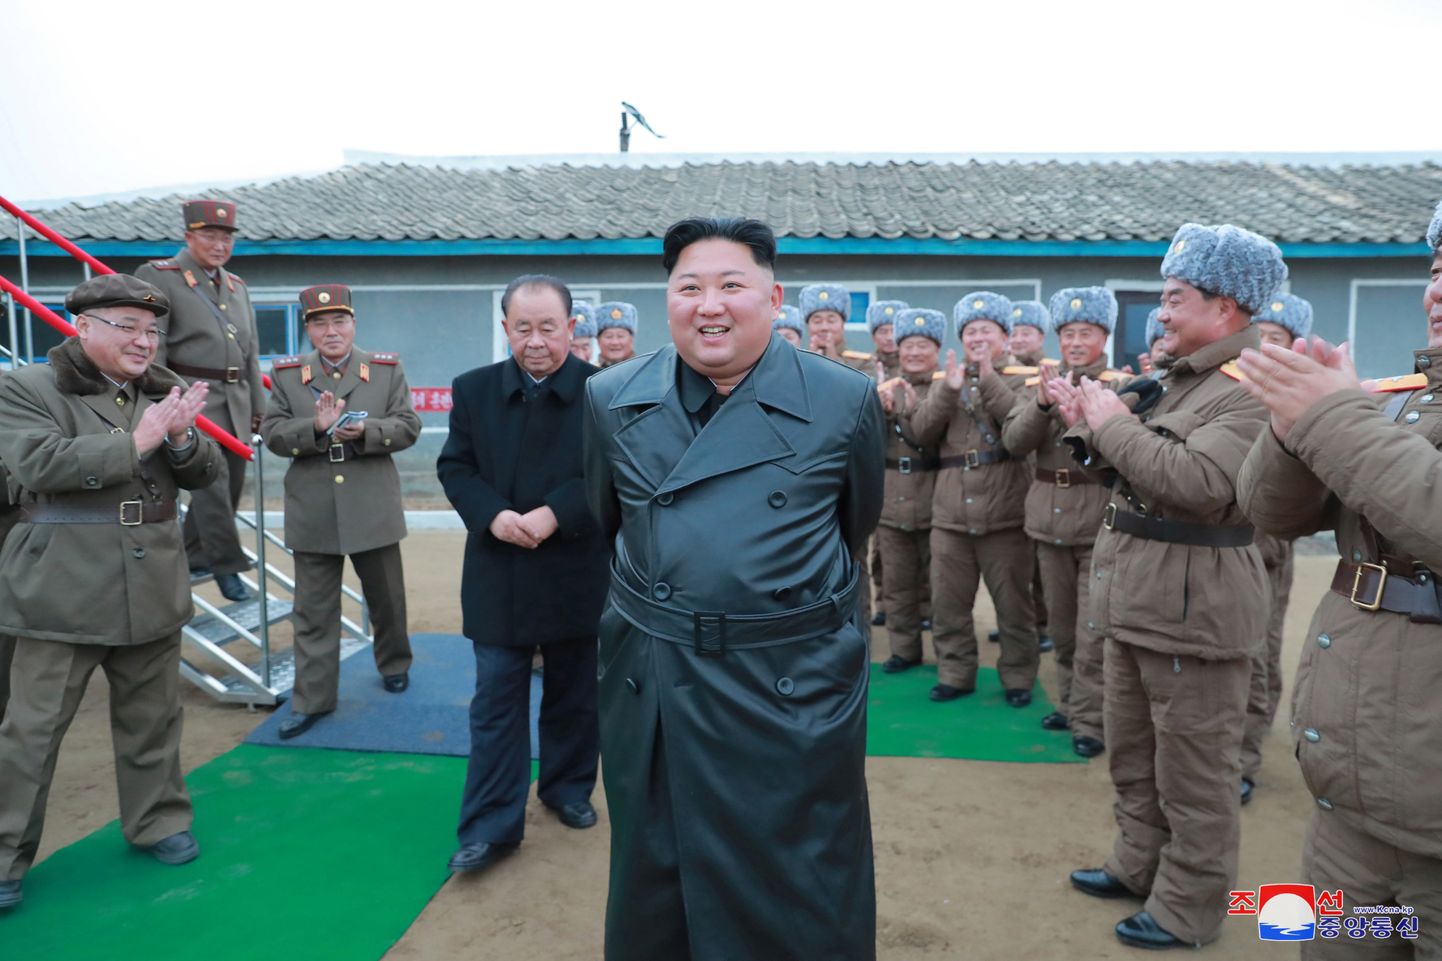 Kim Jong-un 28.novembril koos sõjaväelastega jälgimas uue raketisüsteemi katsetust